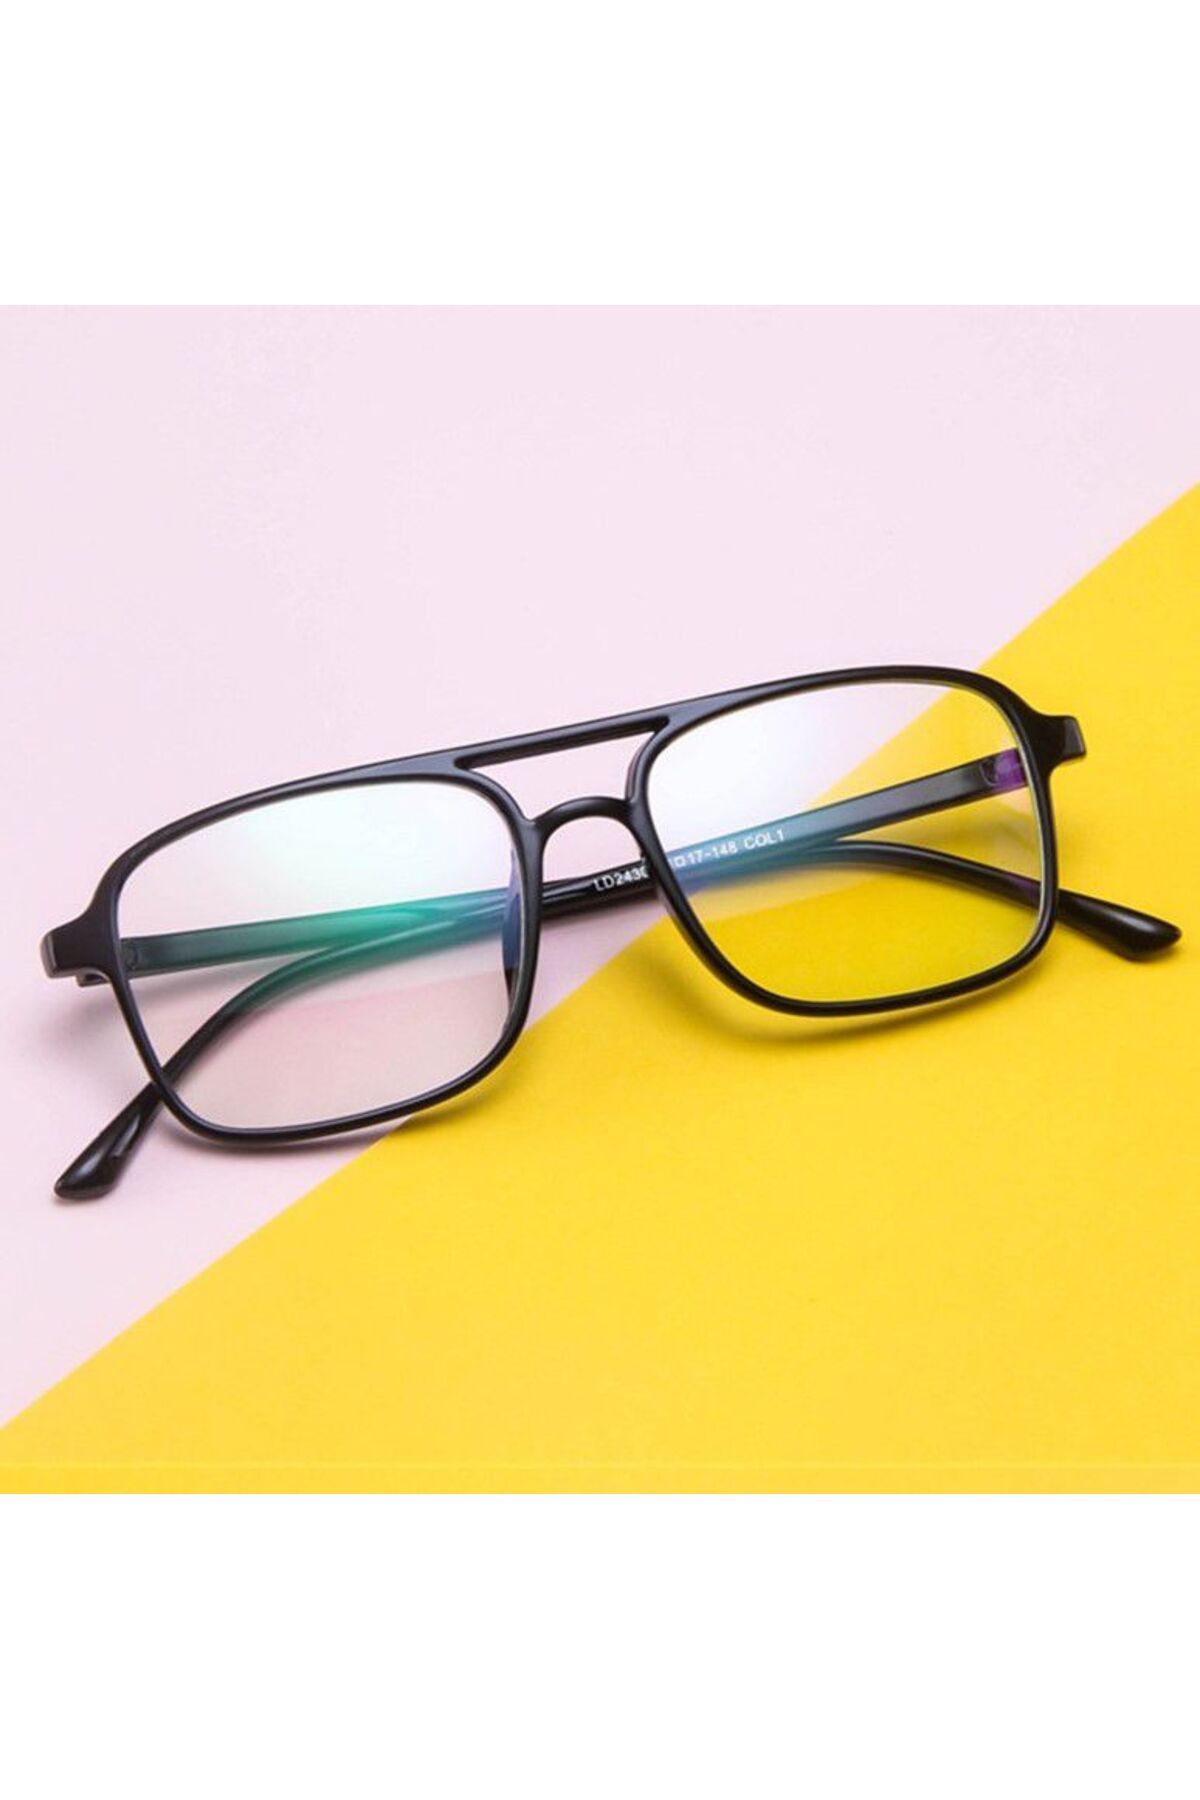 Jwl Unisex Pc Ekran Koruma Gözlük Modelleri Yeni Moda Çerçeve Tarz Gözlüğü Anti Reflekte Imaj